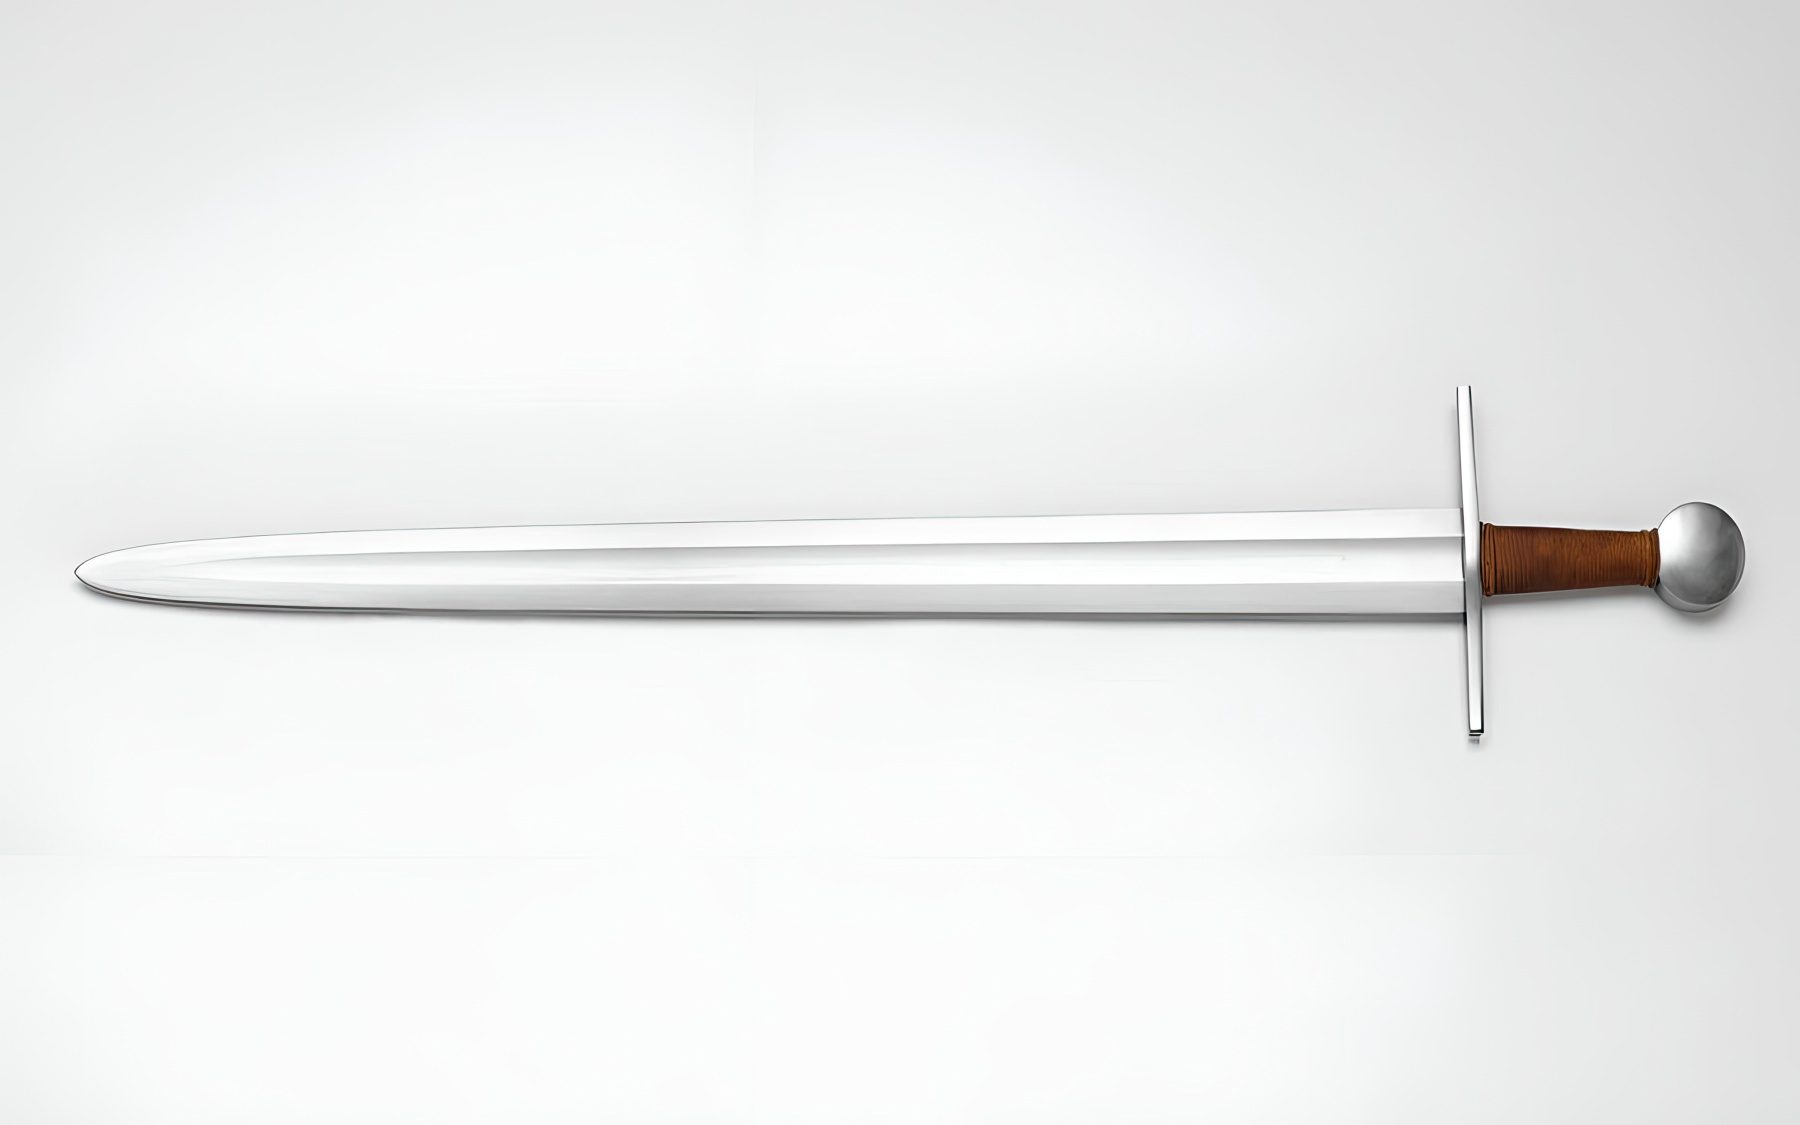 Oakeshott Type X: The Evolved European Viking Sword